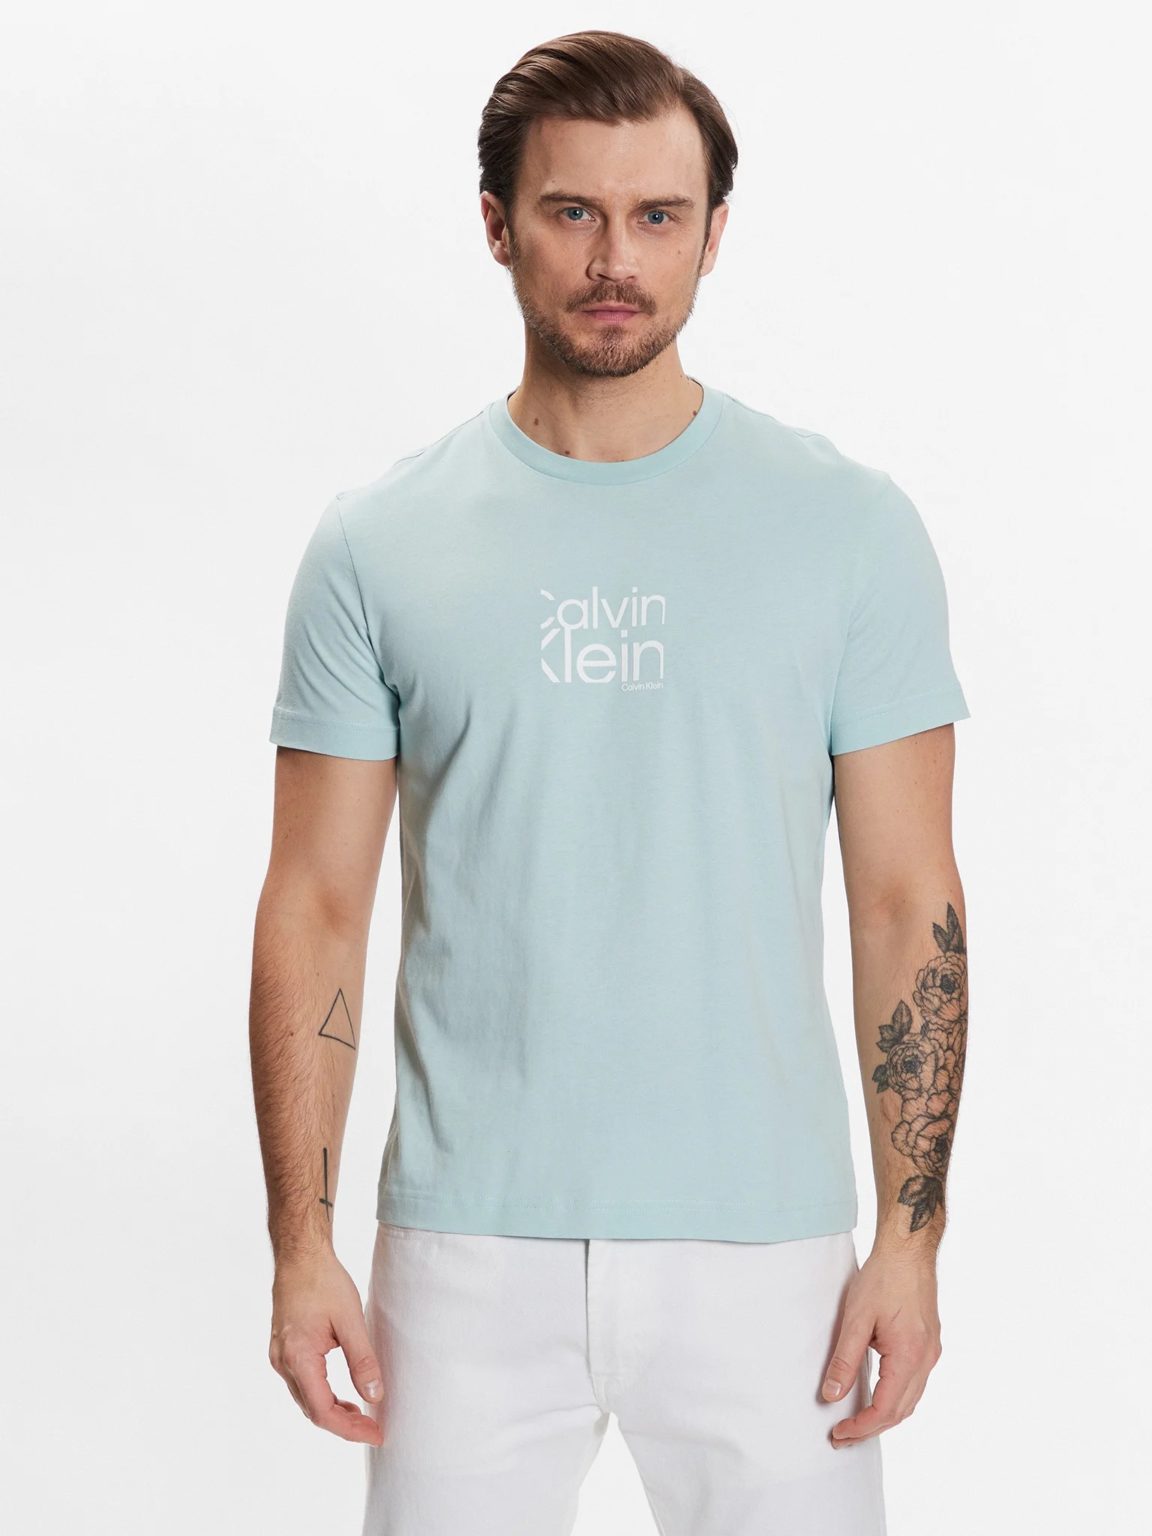 Μπλούζα T-shirt Βεραμάν, CALVIN KLEIN